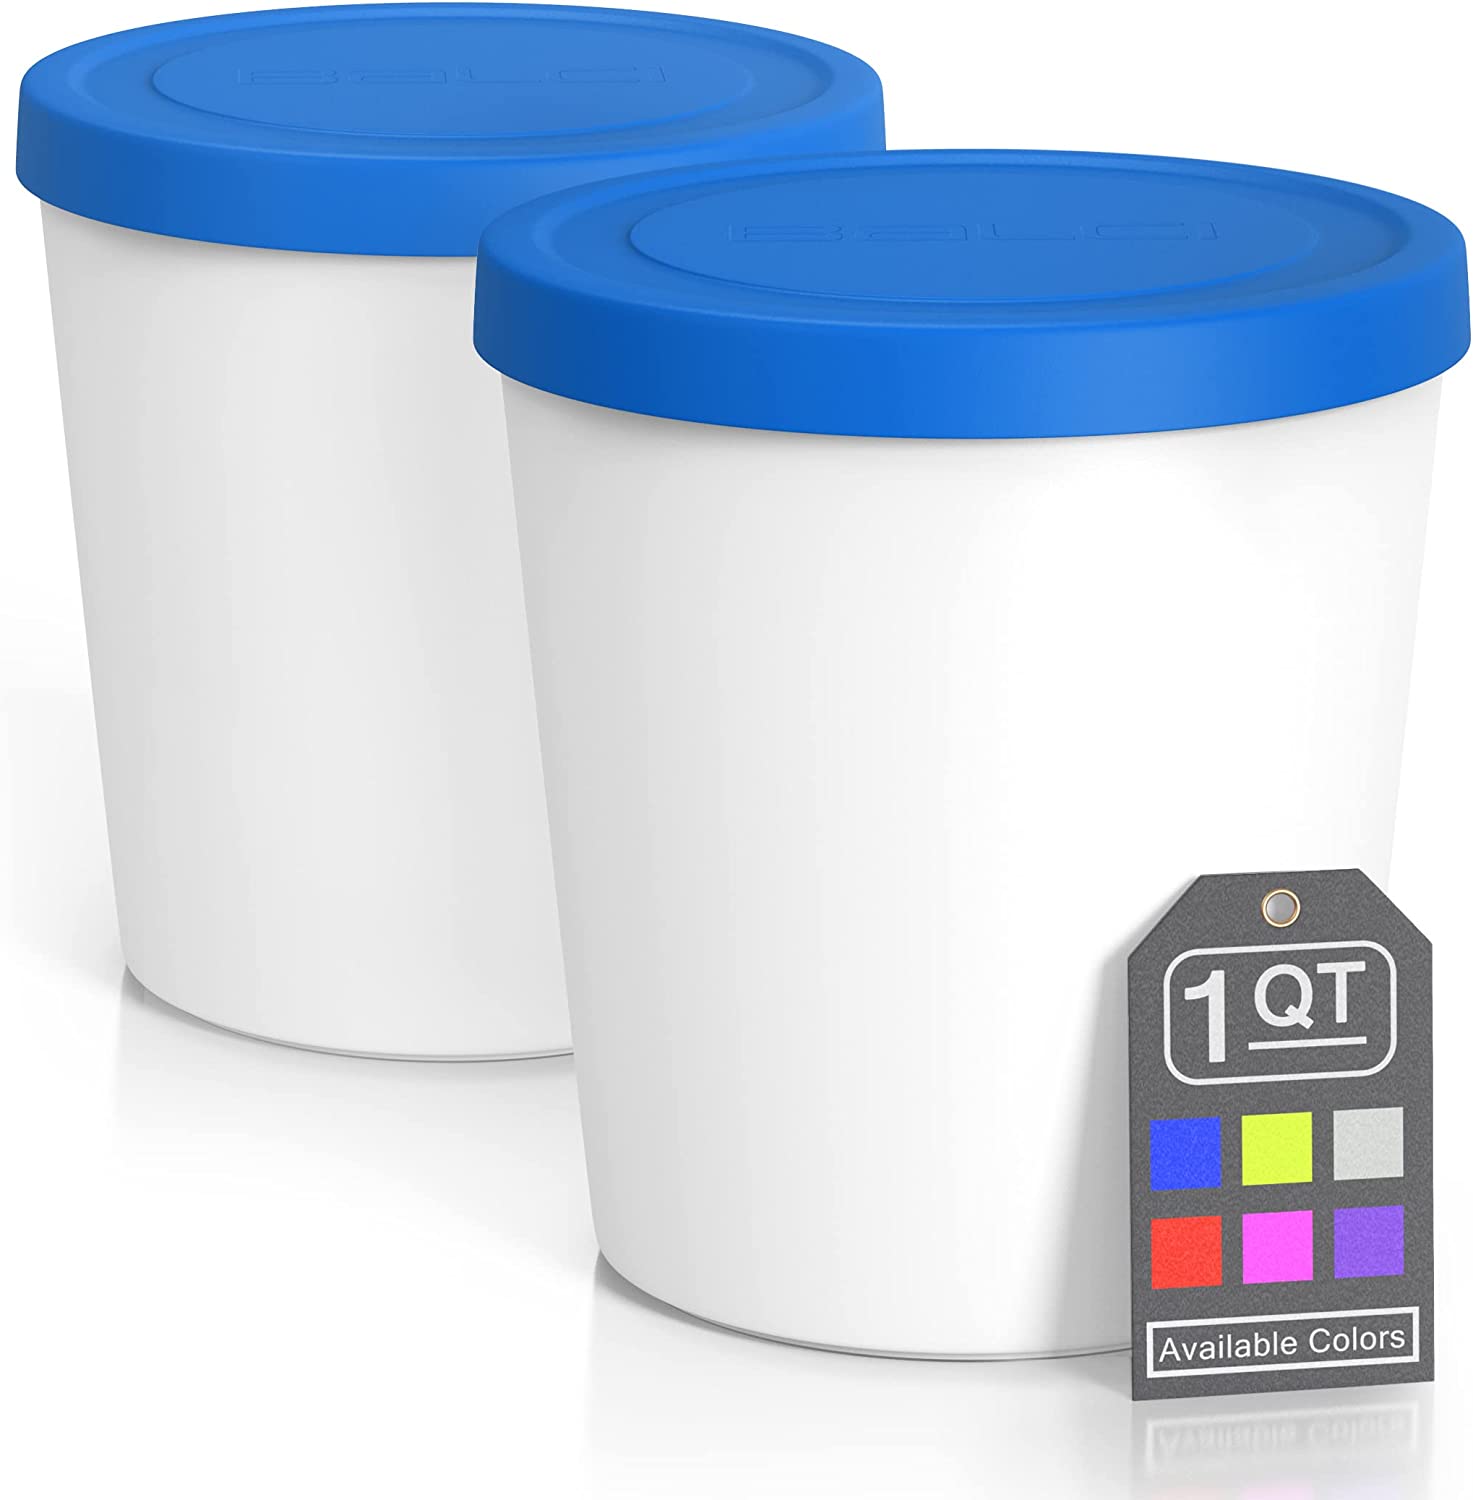 Tovolo Freezer Dishwasher Safe Ice Cream Container